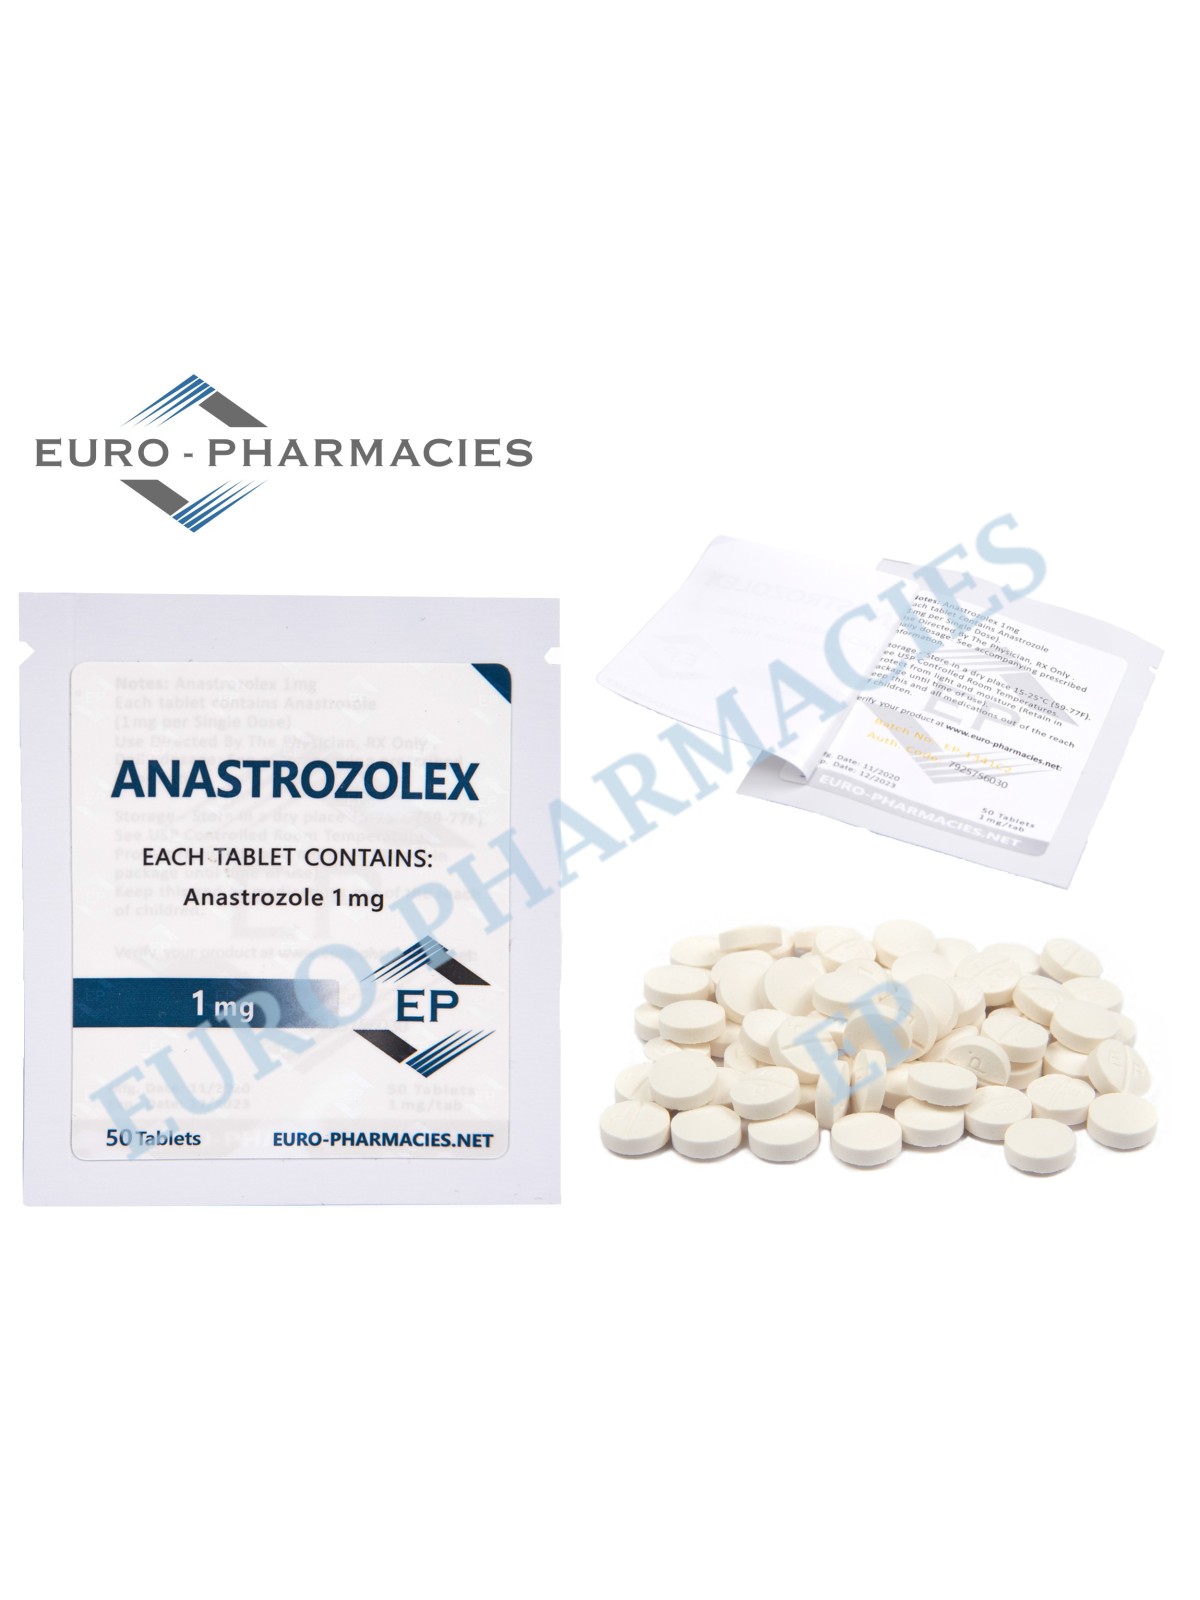 ARIMIDEX - 1mg/tab 50 Tabs/bag - EP - USA